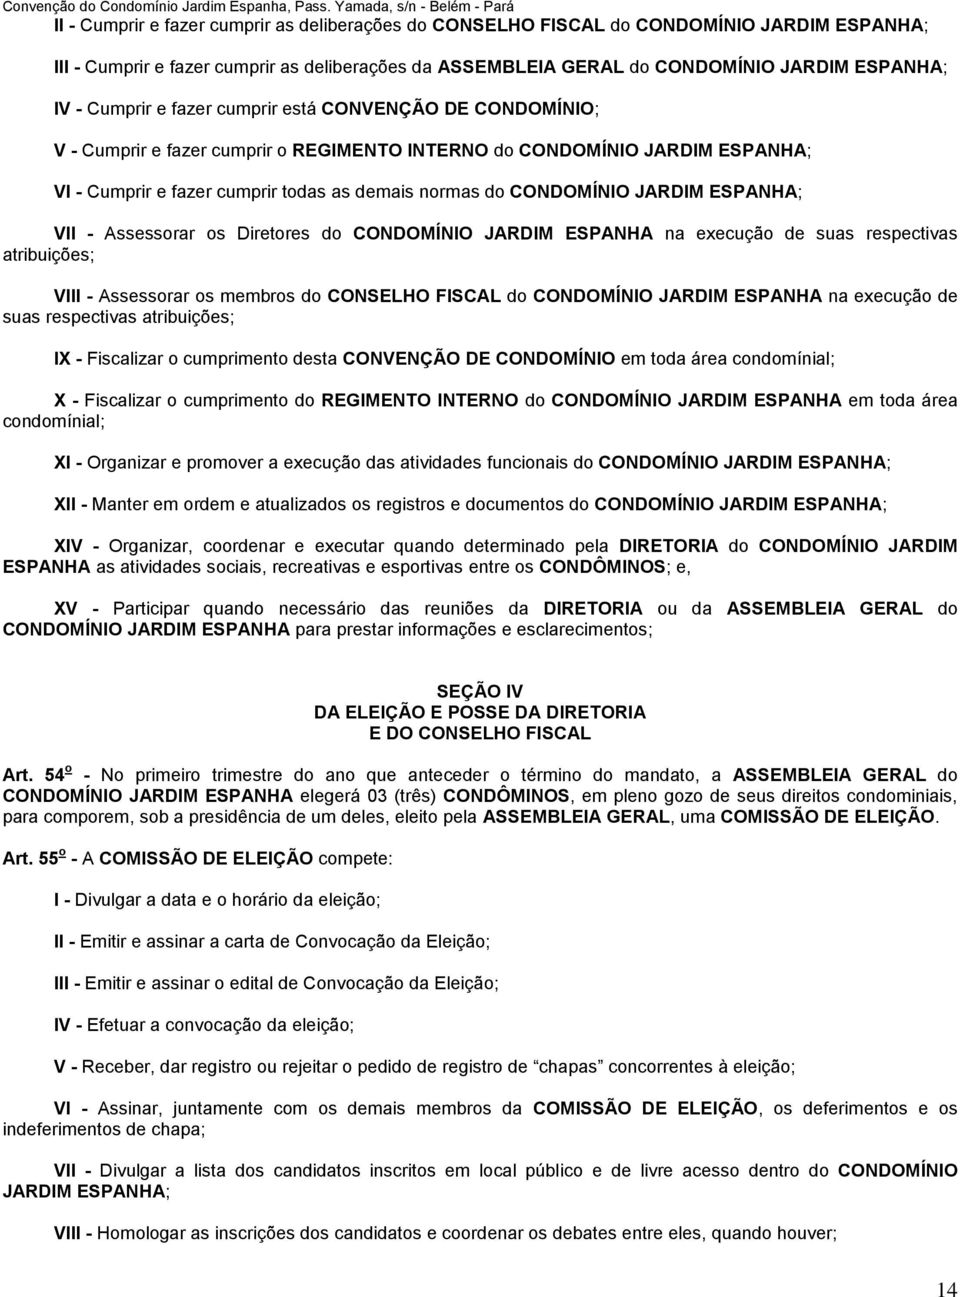 JARDIM ESPANHA; VII - Assessorar os Diretores do CONDOMÍNIO JARDIM ESPANHA na execução de suas respectivas atribuições; VIII - Assessorar os membros do CONSELHO FISCAL do CONDOMÍNIO JARDIM ESPANHA na